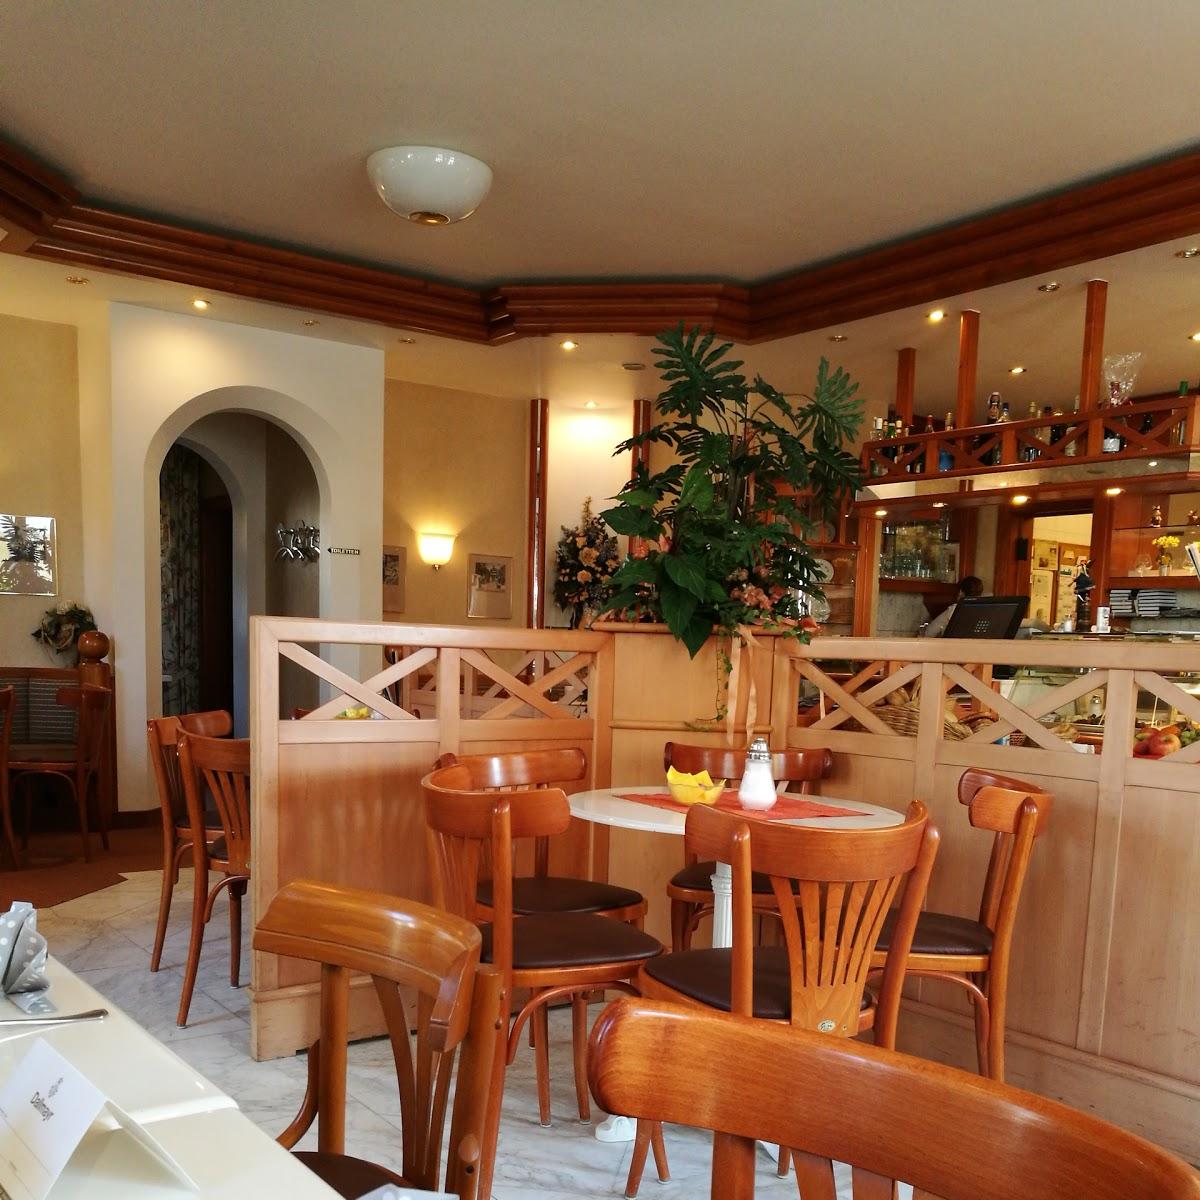 Restaurant "Café Konditorei Hofmark" in Iffeldorf